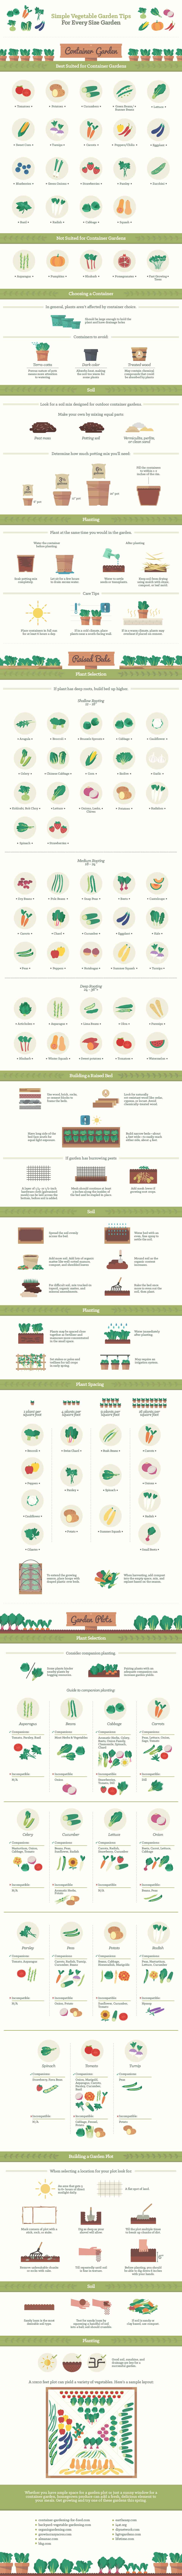 Simple Vegetable Gardening Tips